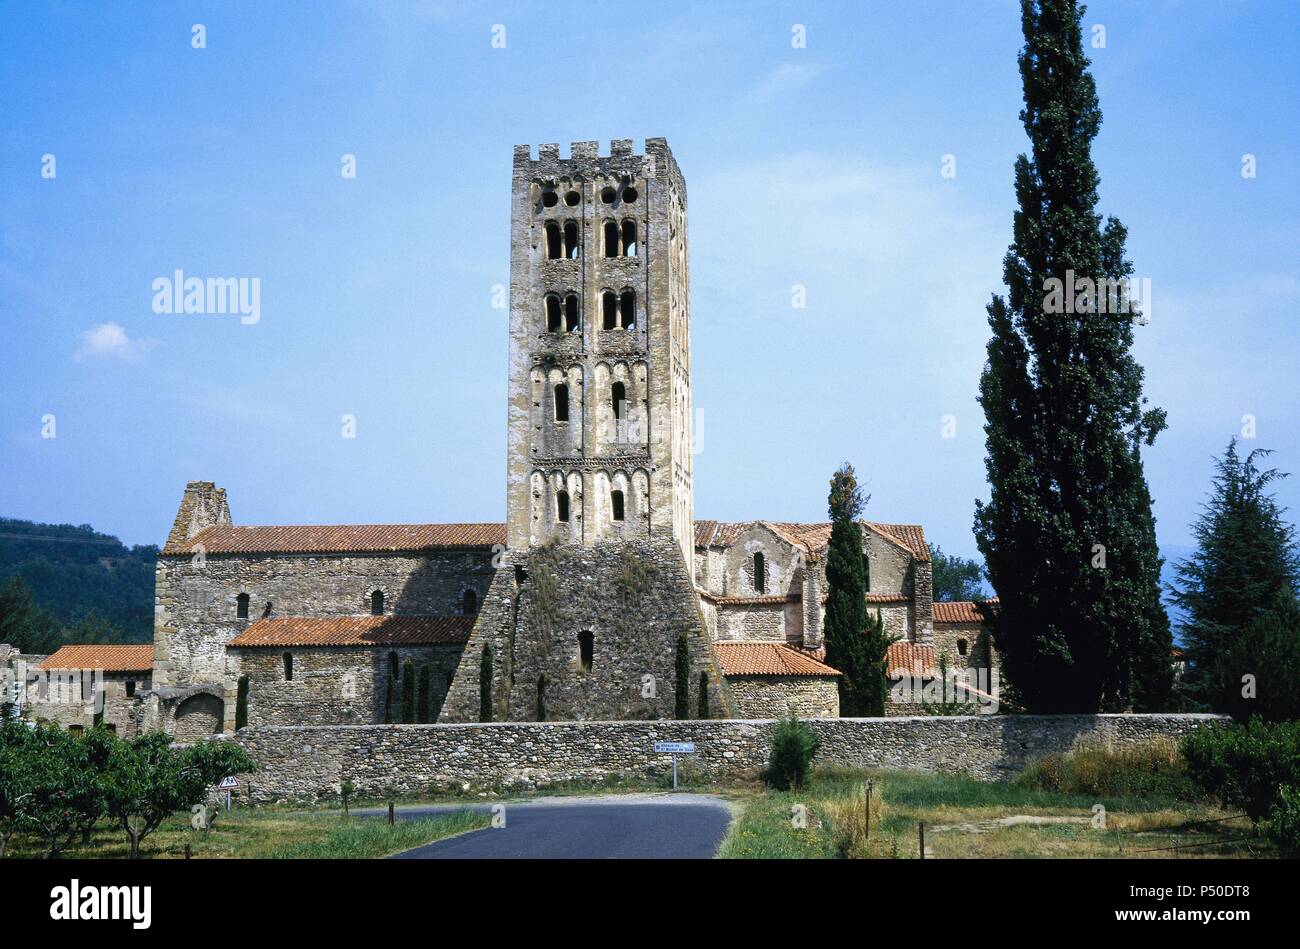 Frankreich. Abtei von Saint-Michel-de-Cuxa. Romanische Glockenturm. Lombardischen Stil. Stockfoto